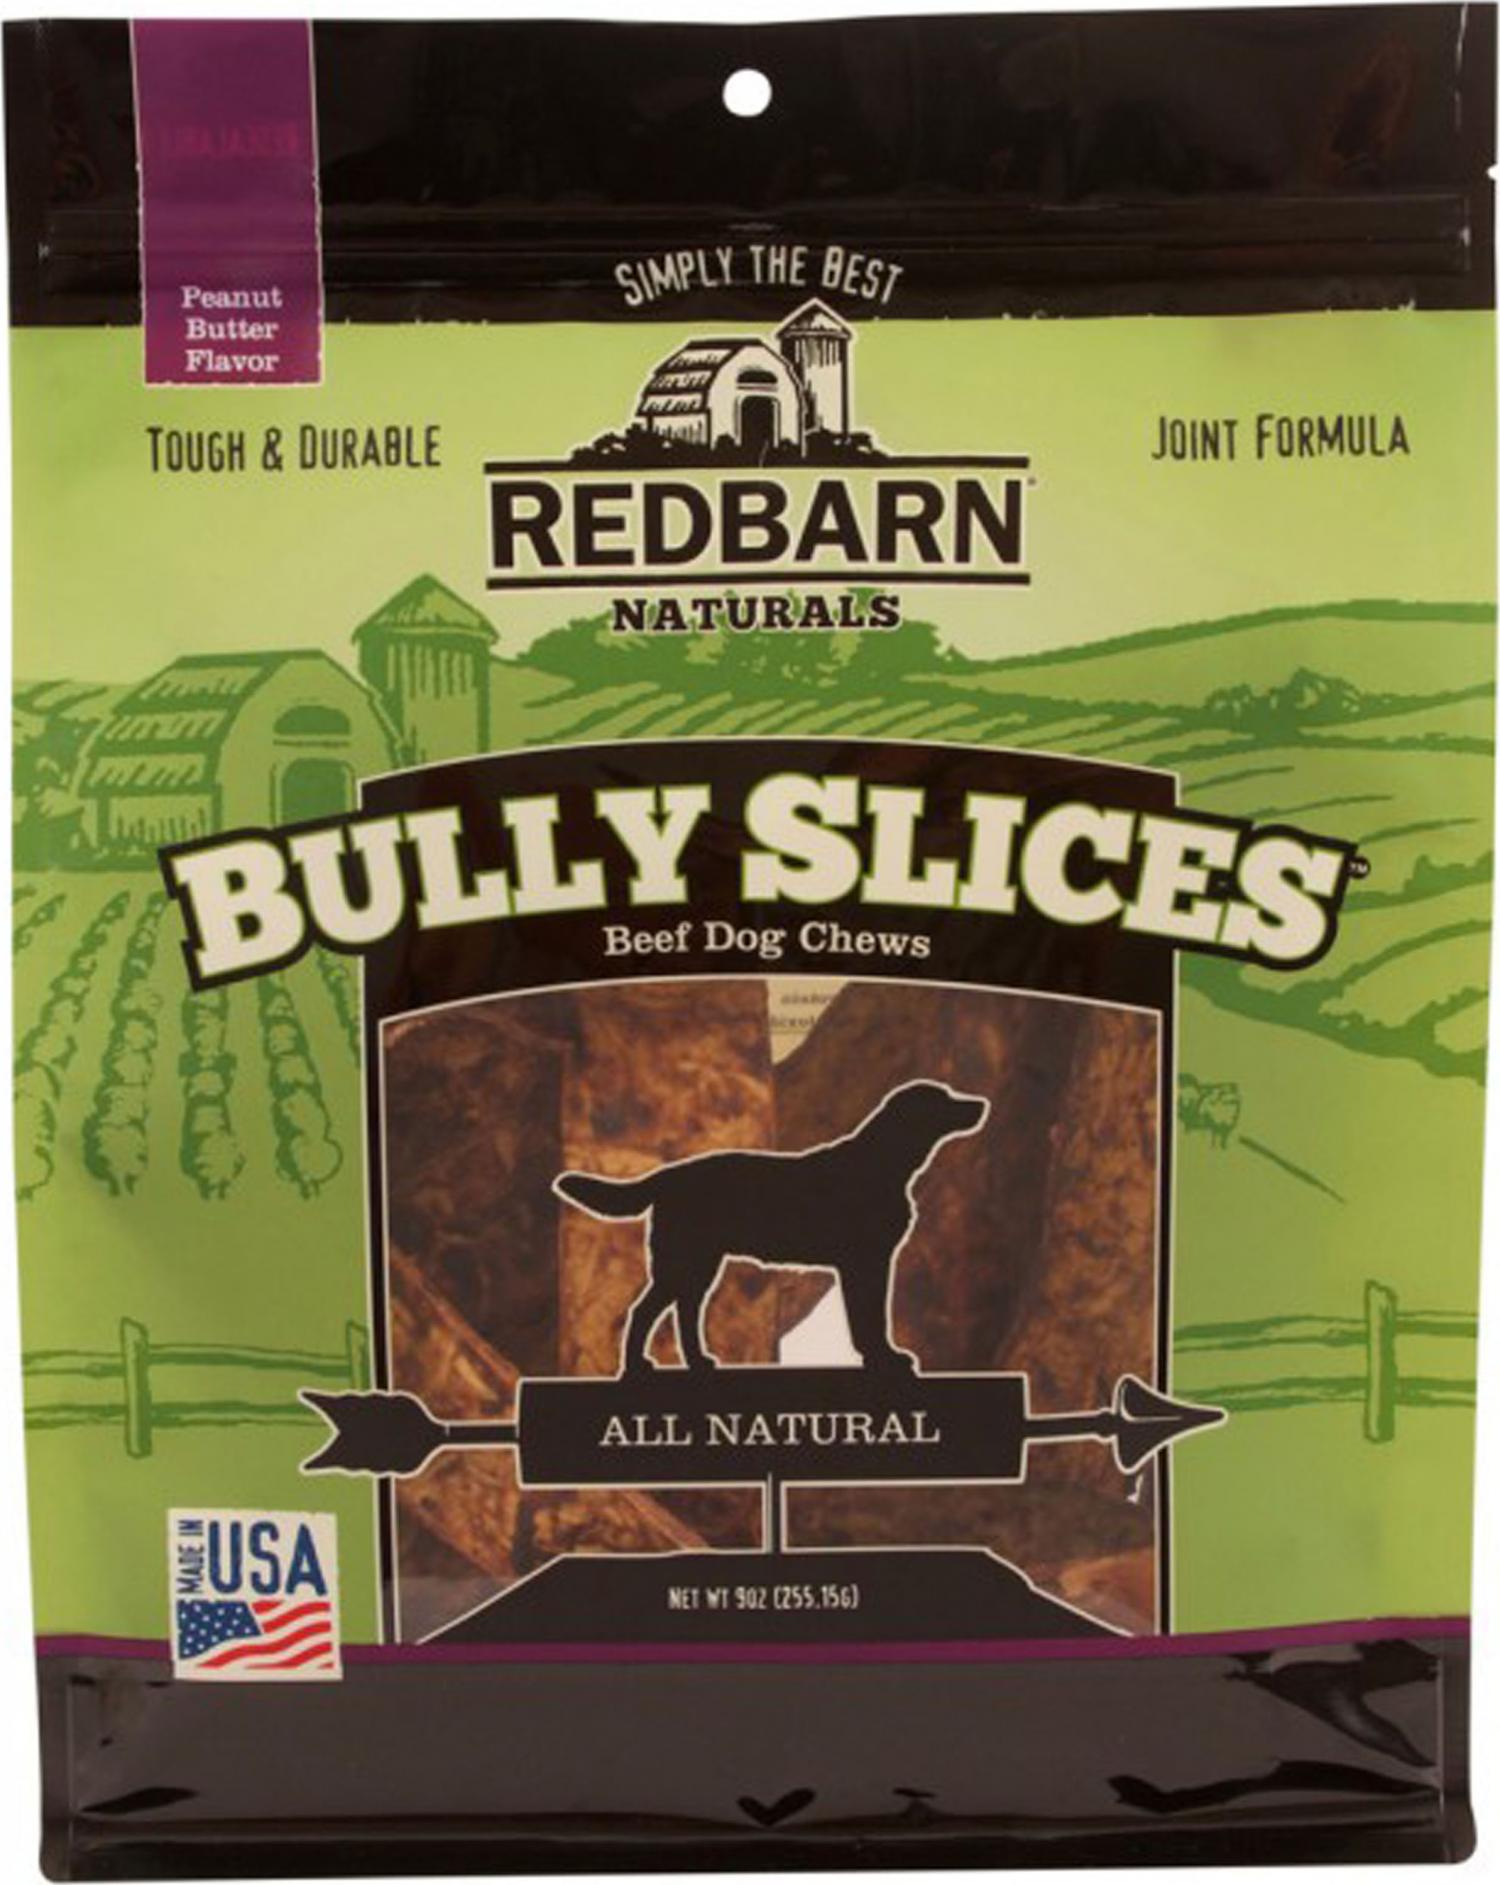 Redbarn Bully Slices, 9 Oz, Peanut Butter